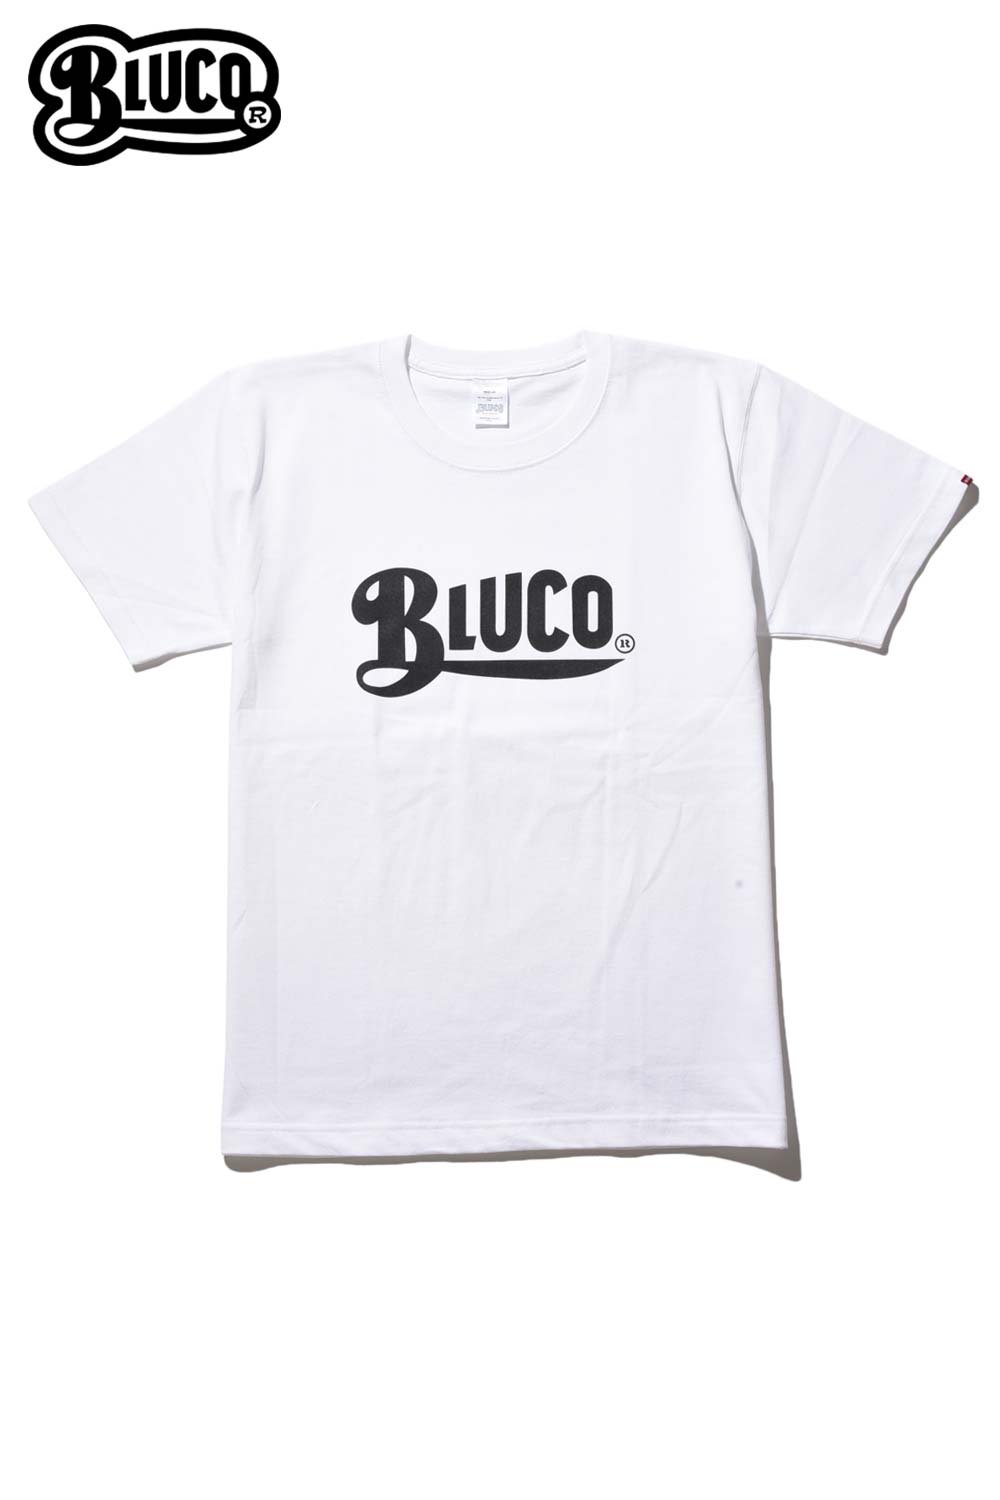 BLUCO(ブルコ) Tシャツ SUPER HEAVY WEIGHT TEE'S-LOGO- OL-805-019 通販正規取扱 | ハーレムストア